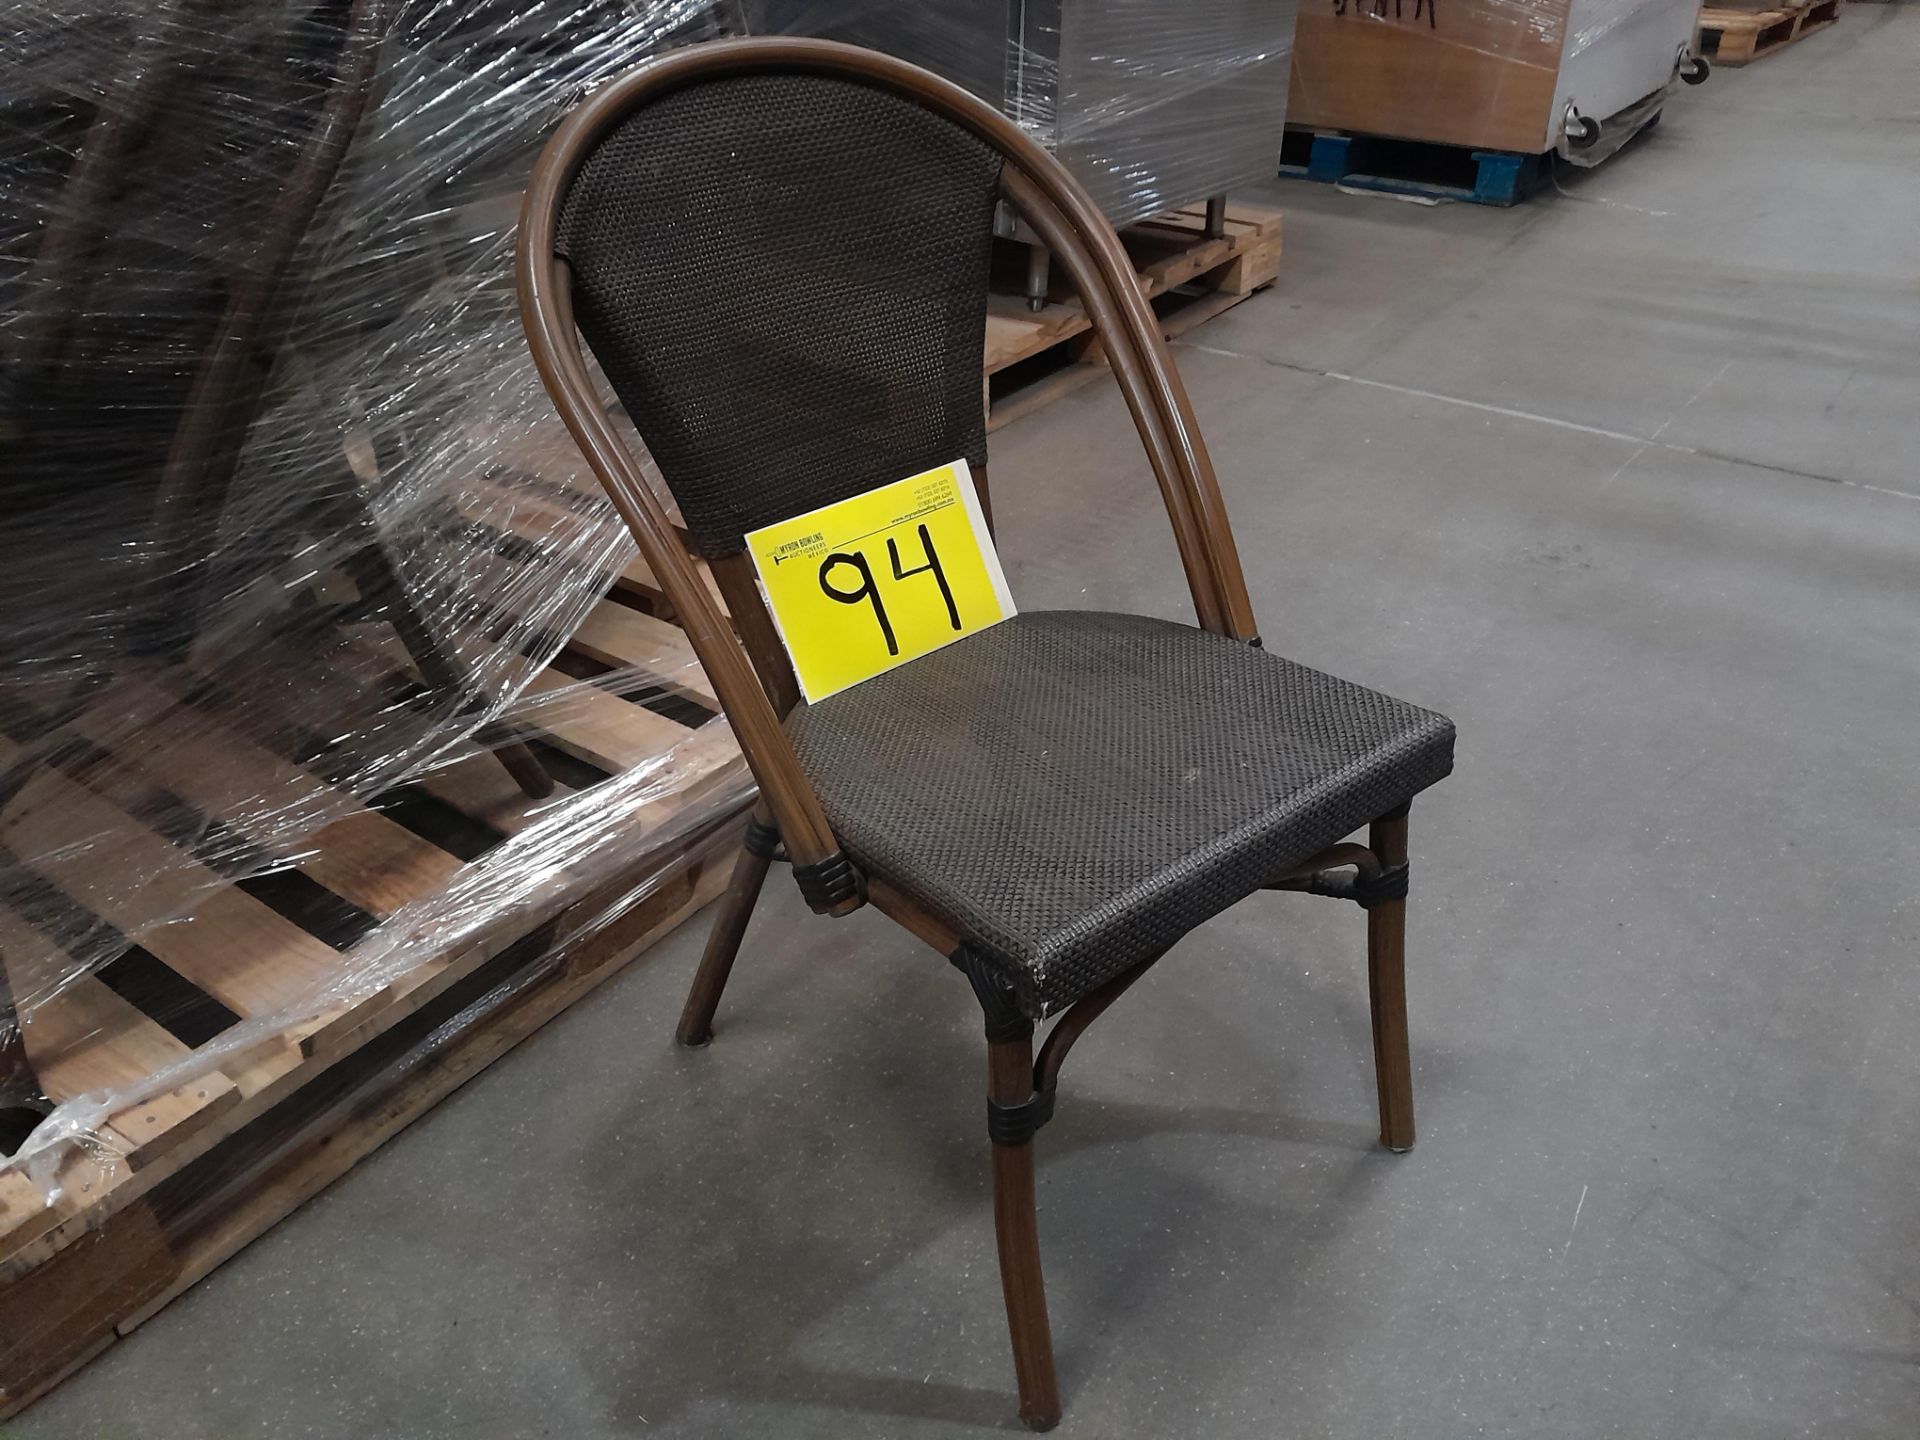 Lote de 12 sillas de ratán, color gris (Equipo usado)